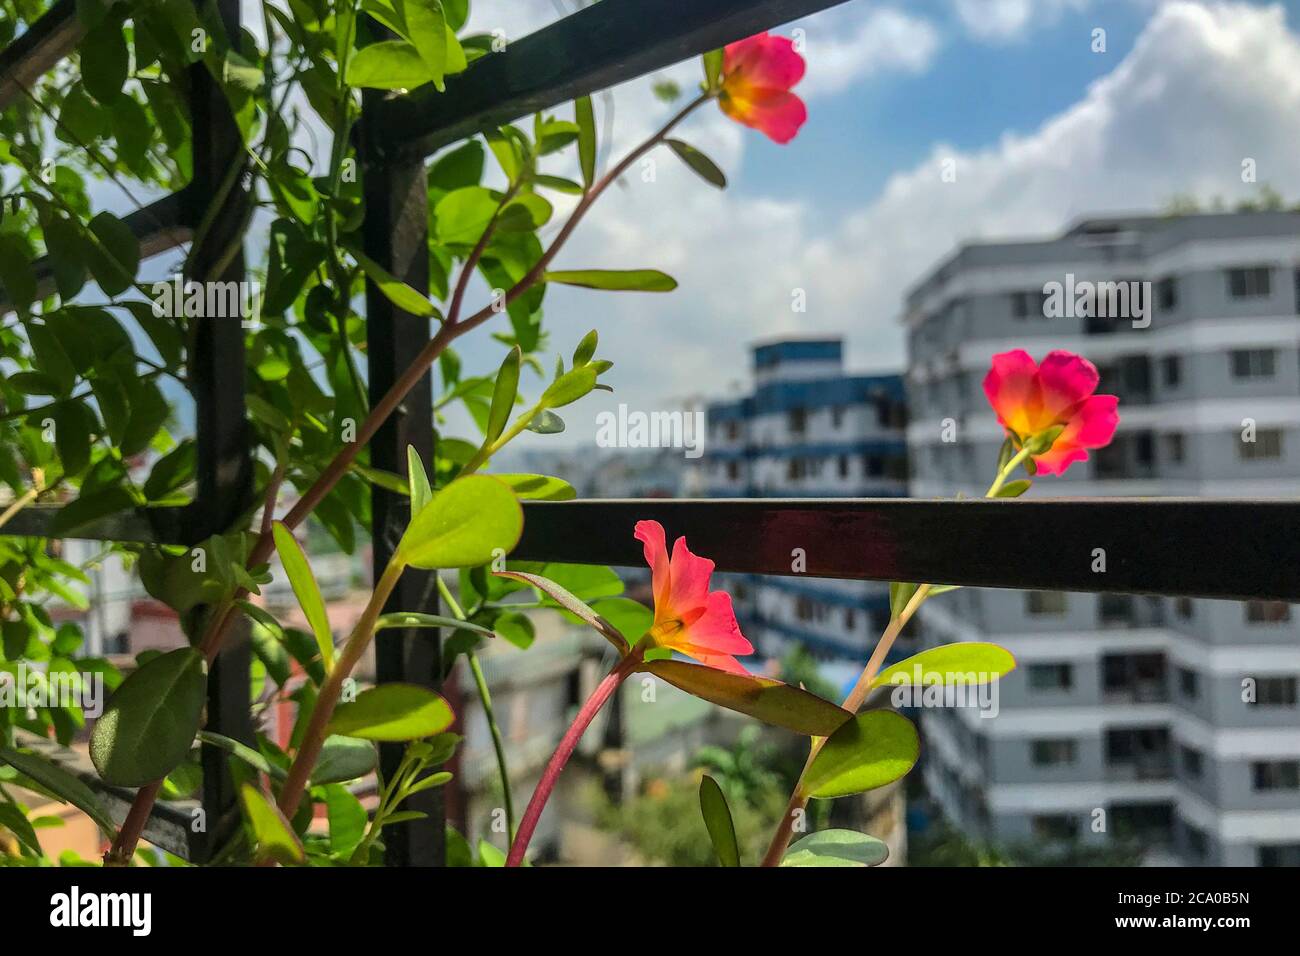 Portulaca oder Purslane Blumen blühen in einem Balkongarten. Dhaka, Bangladesch Stockfoto